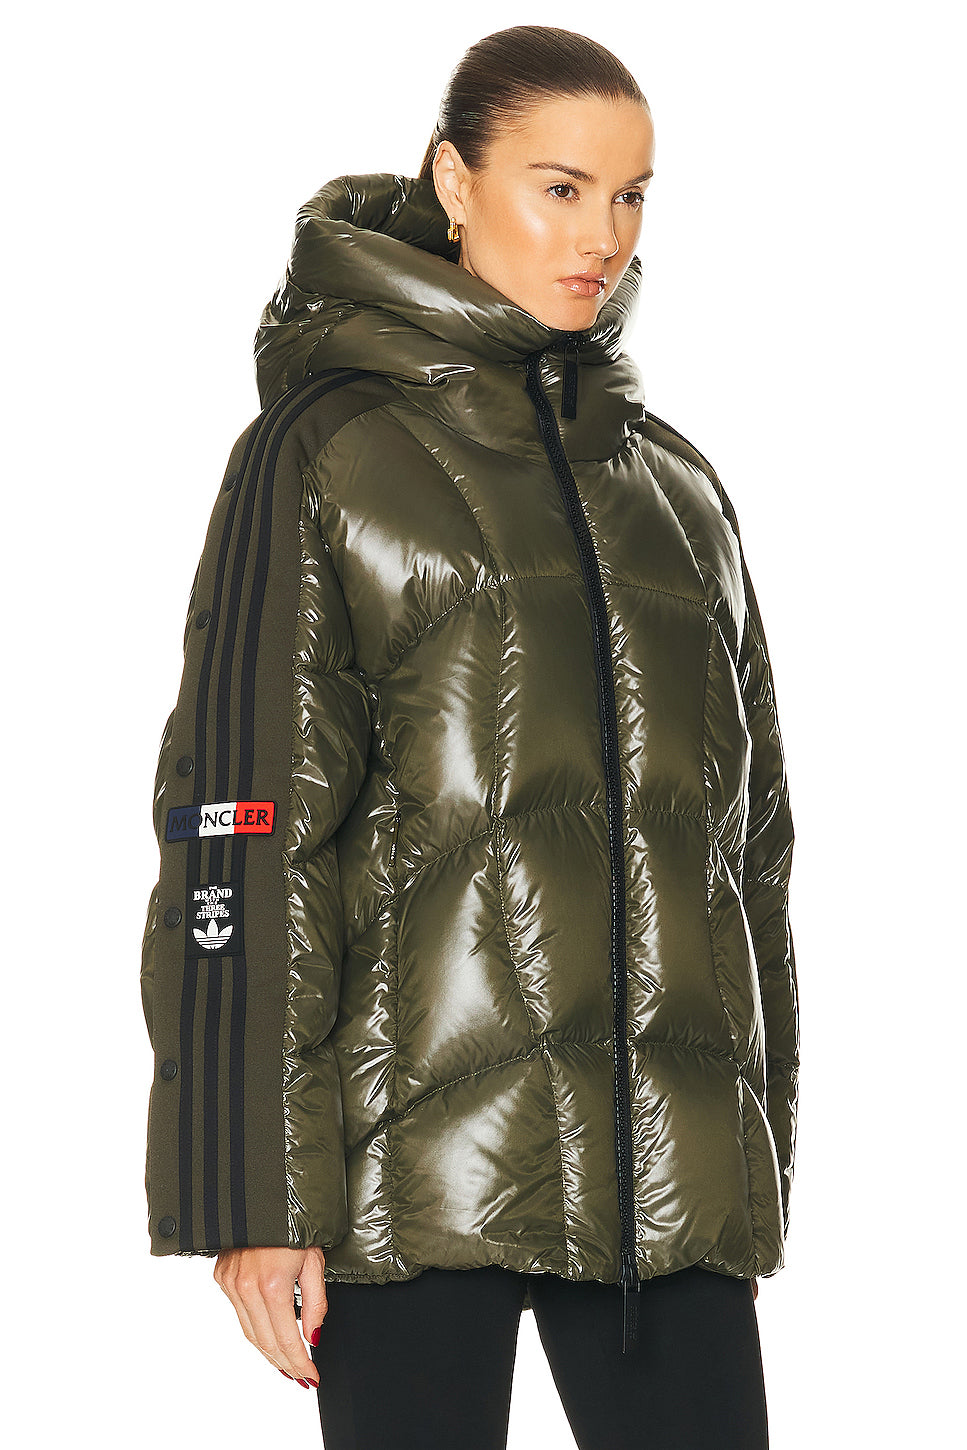 x Adidas Beiser Jacket